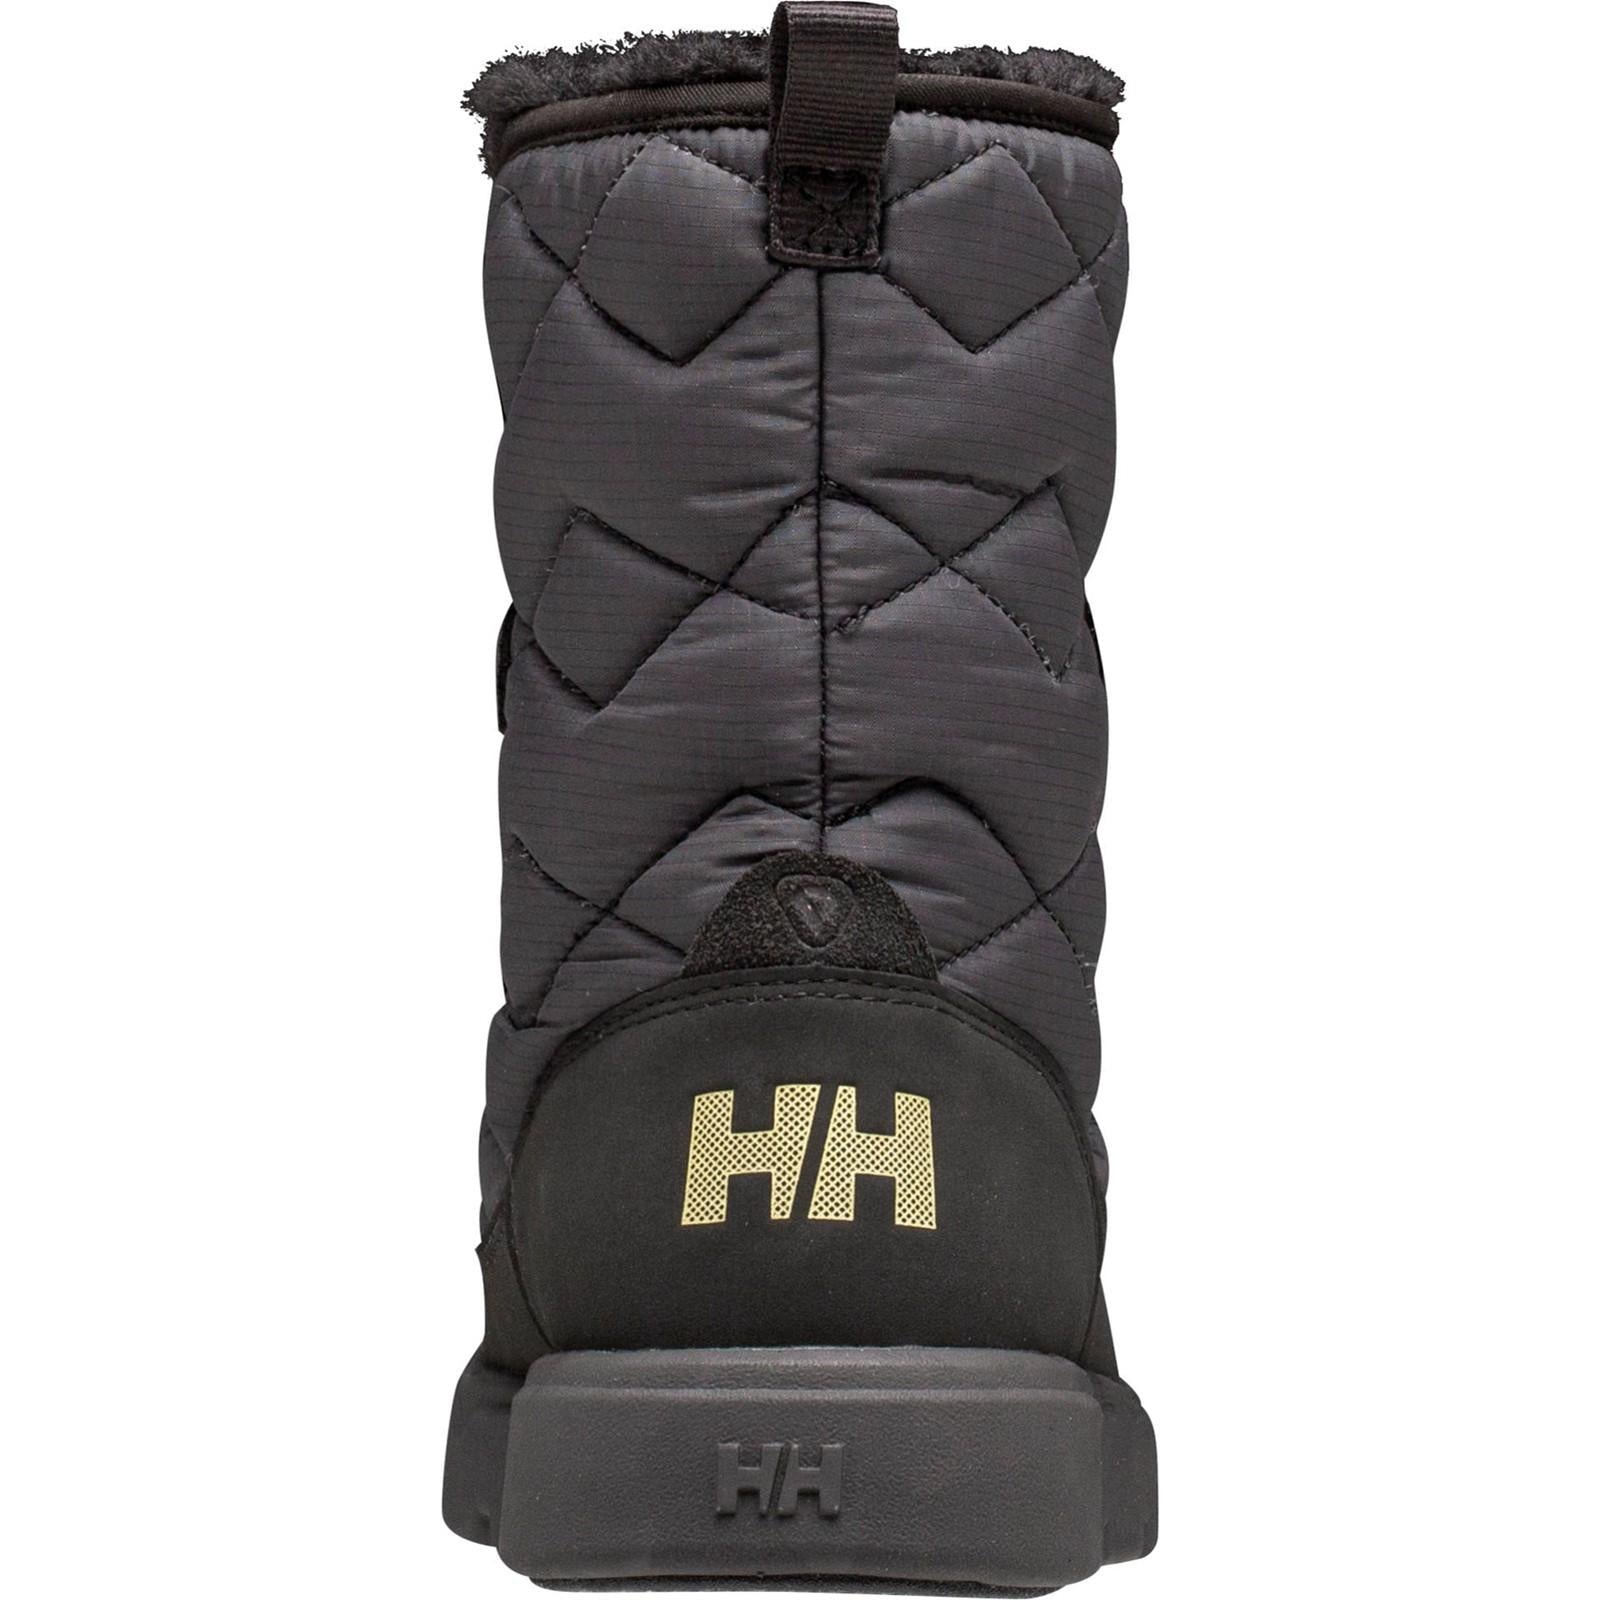 Helly-hansen Willetta Winter Boots